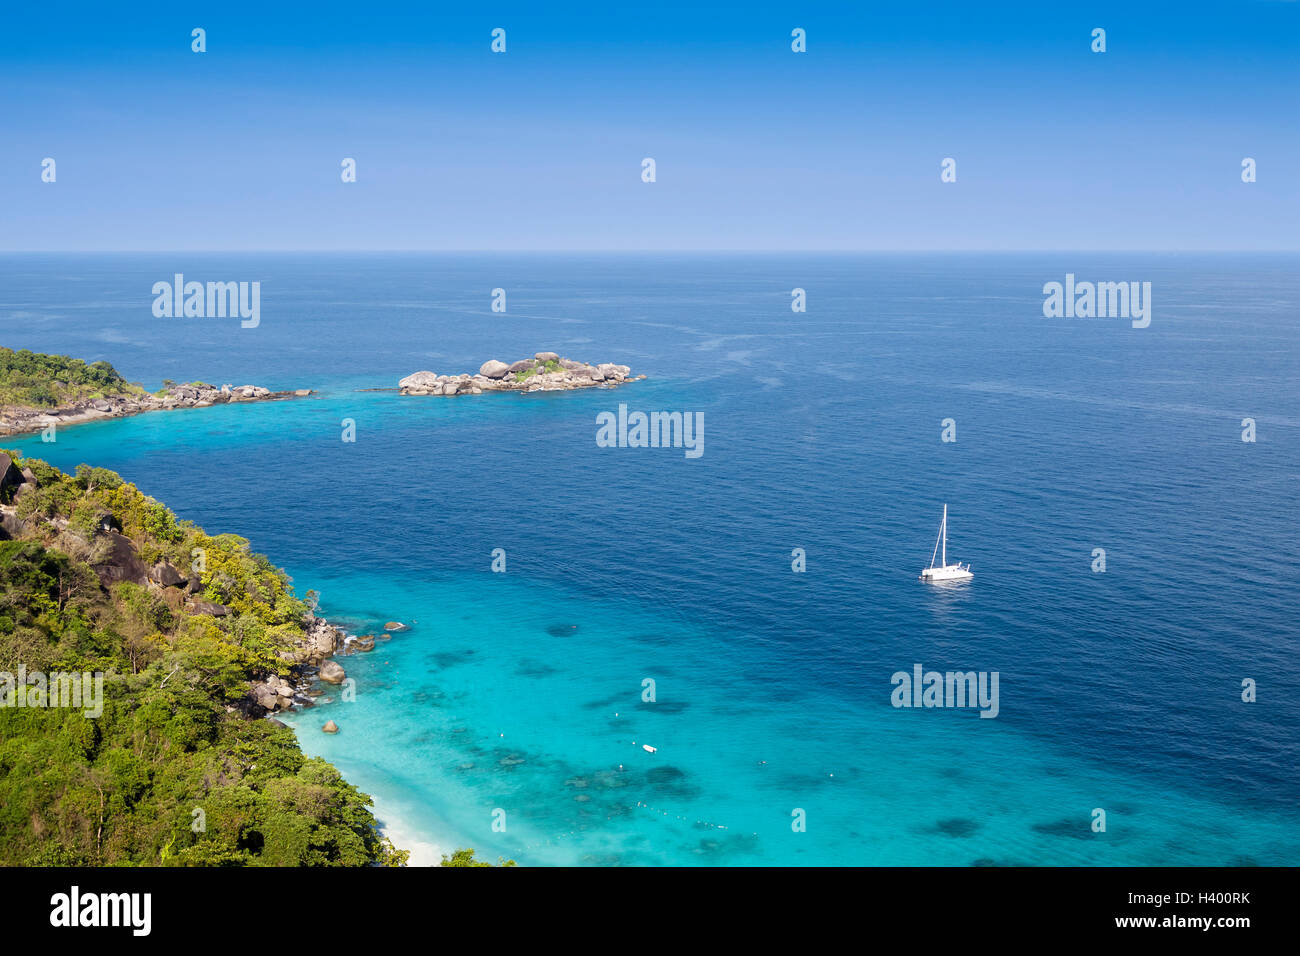 Île tropicale entourée d'eau turquoise transparente et les récifs coralliens Banque D'Images